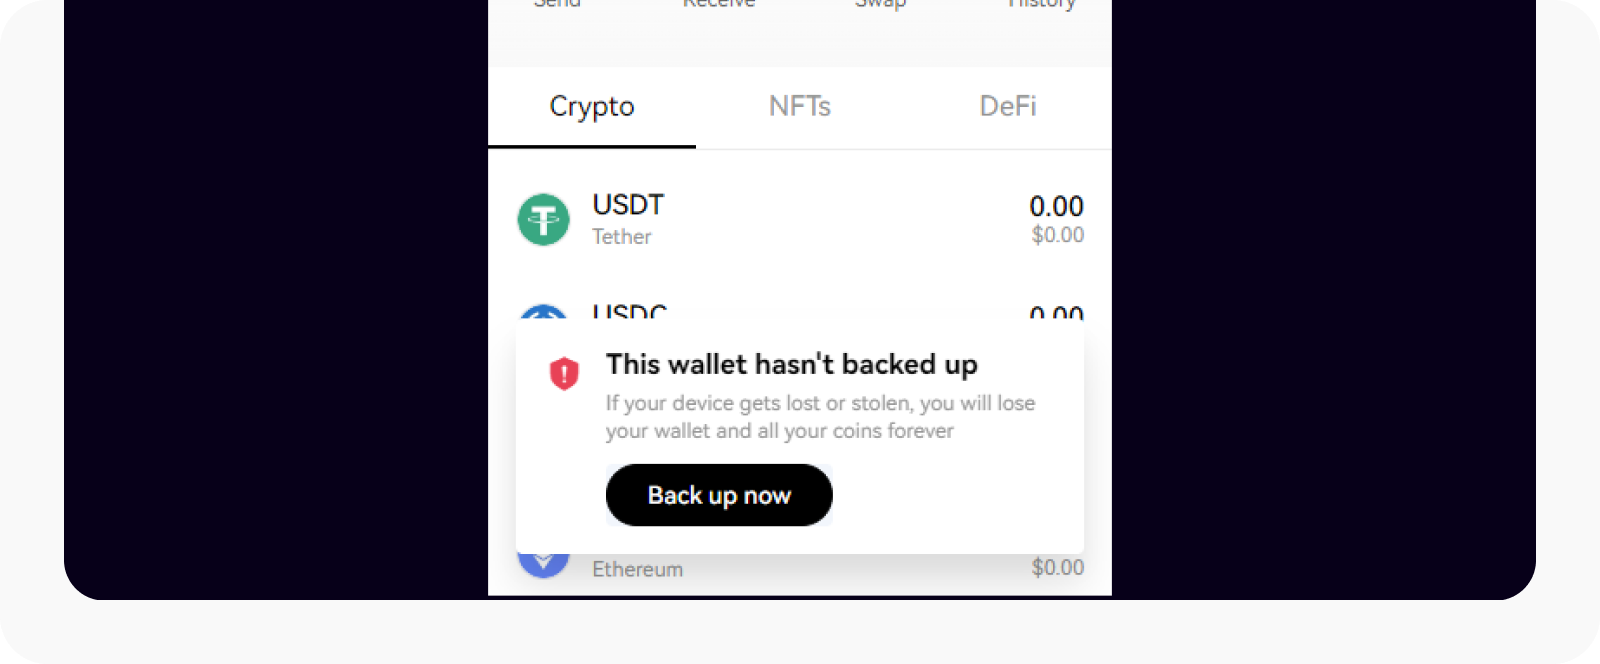 Selecteer Nu een back-up maken om je wallet te beveiligen 